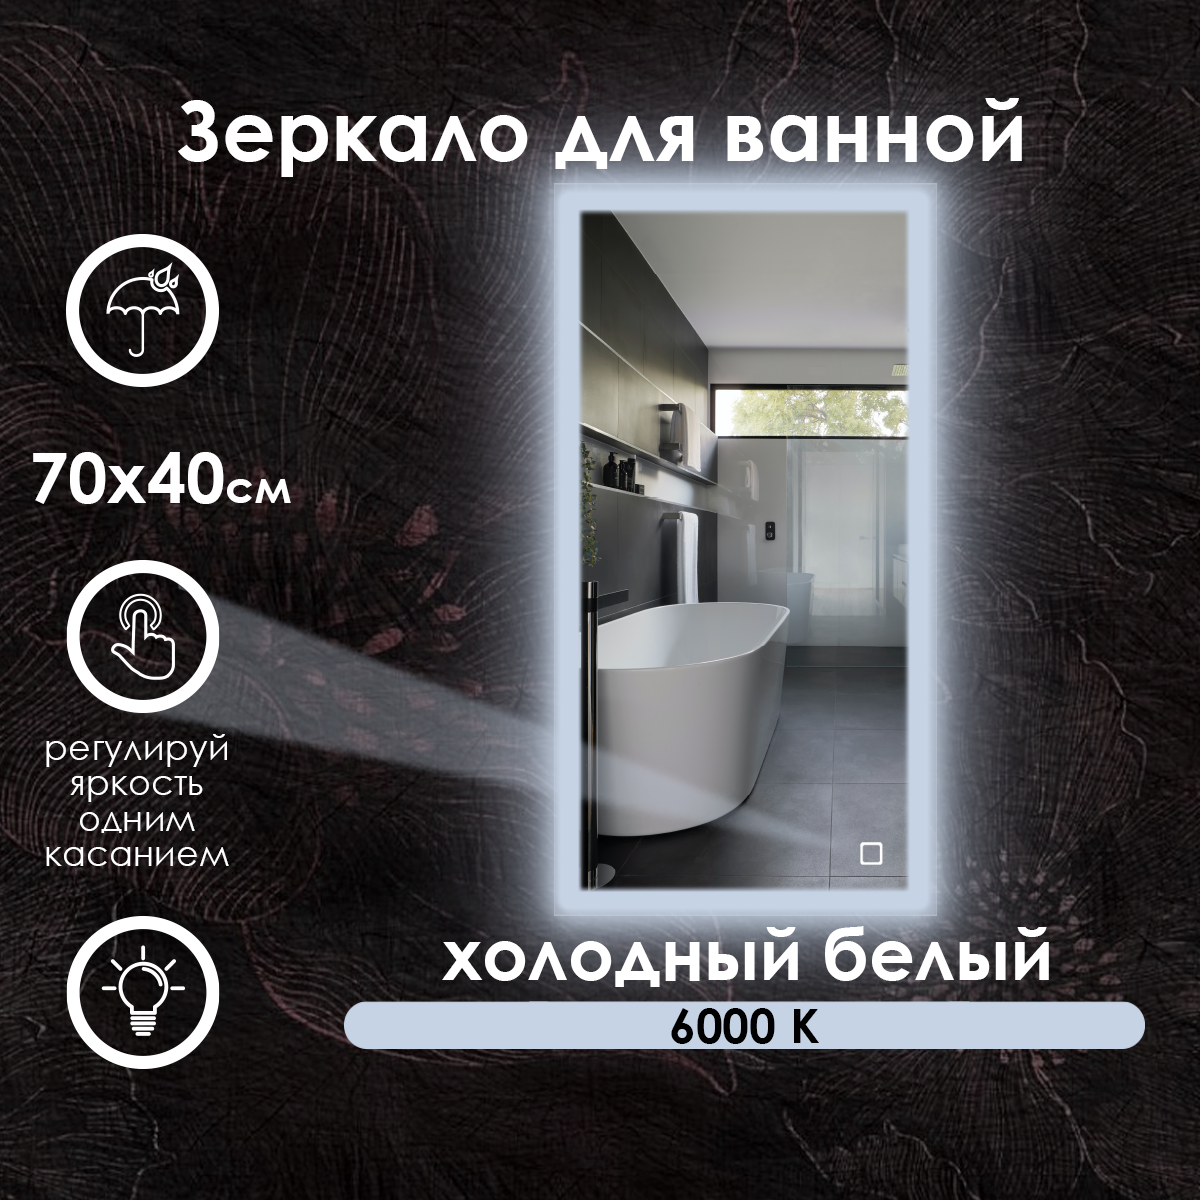 Зеркало для ванной прямоугольное, фронтальная подсветка по краю, холодный свет 6000К, 70х40 см.